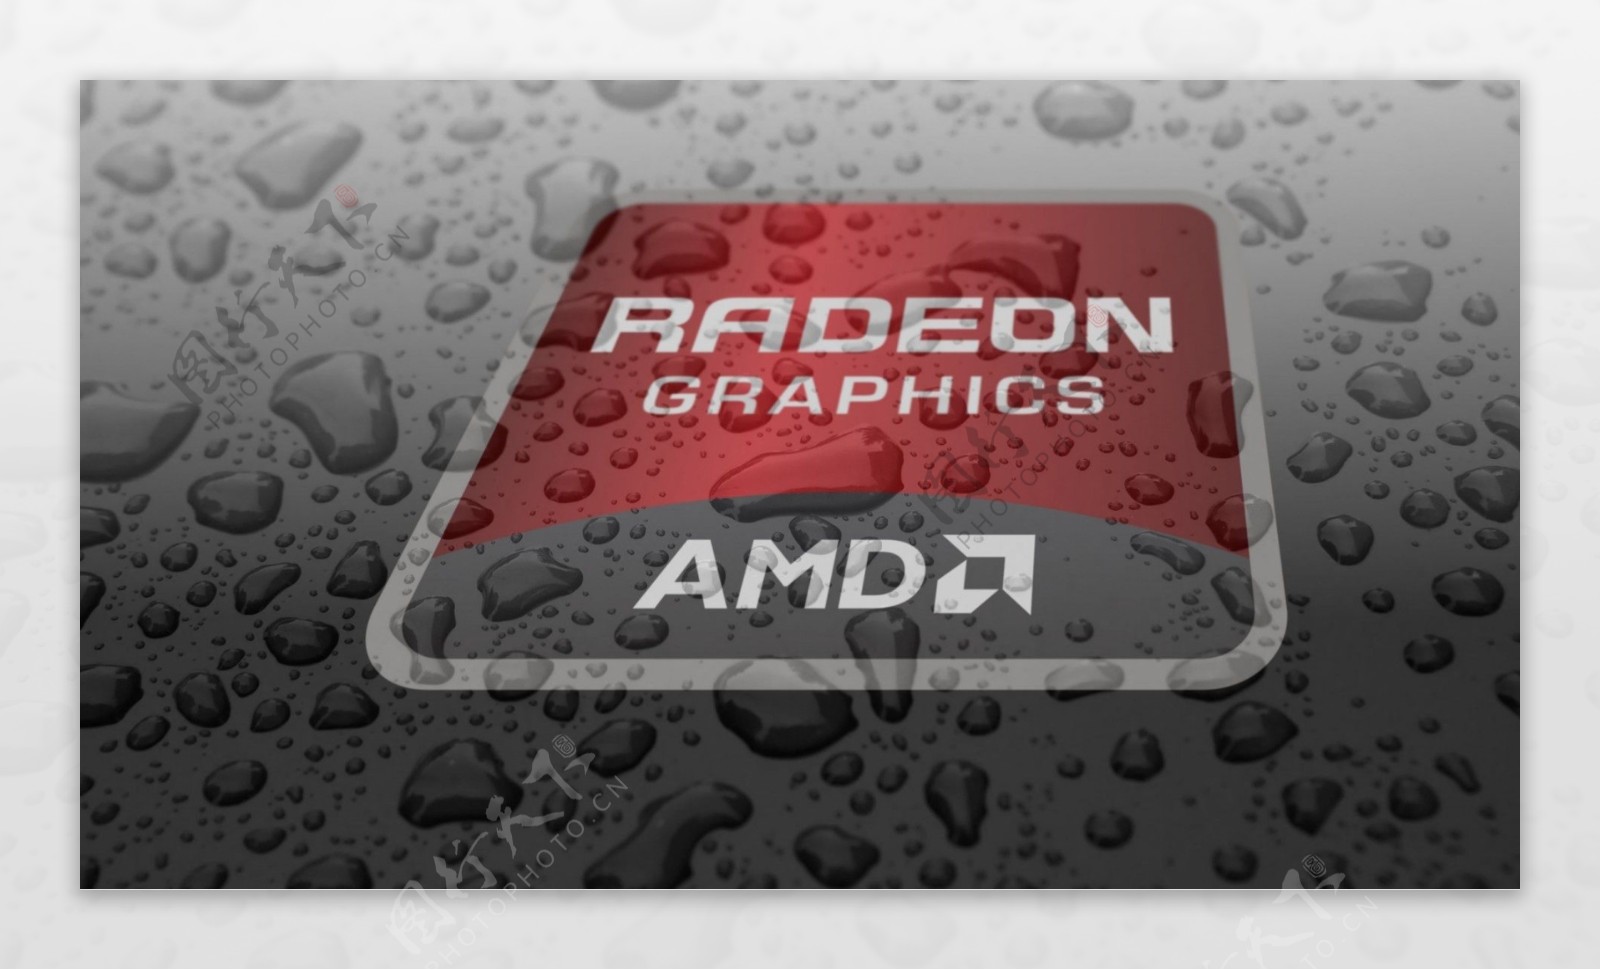 高清背景素材图片AMD